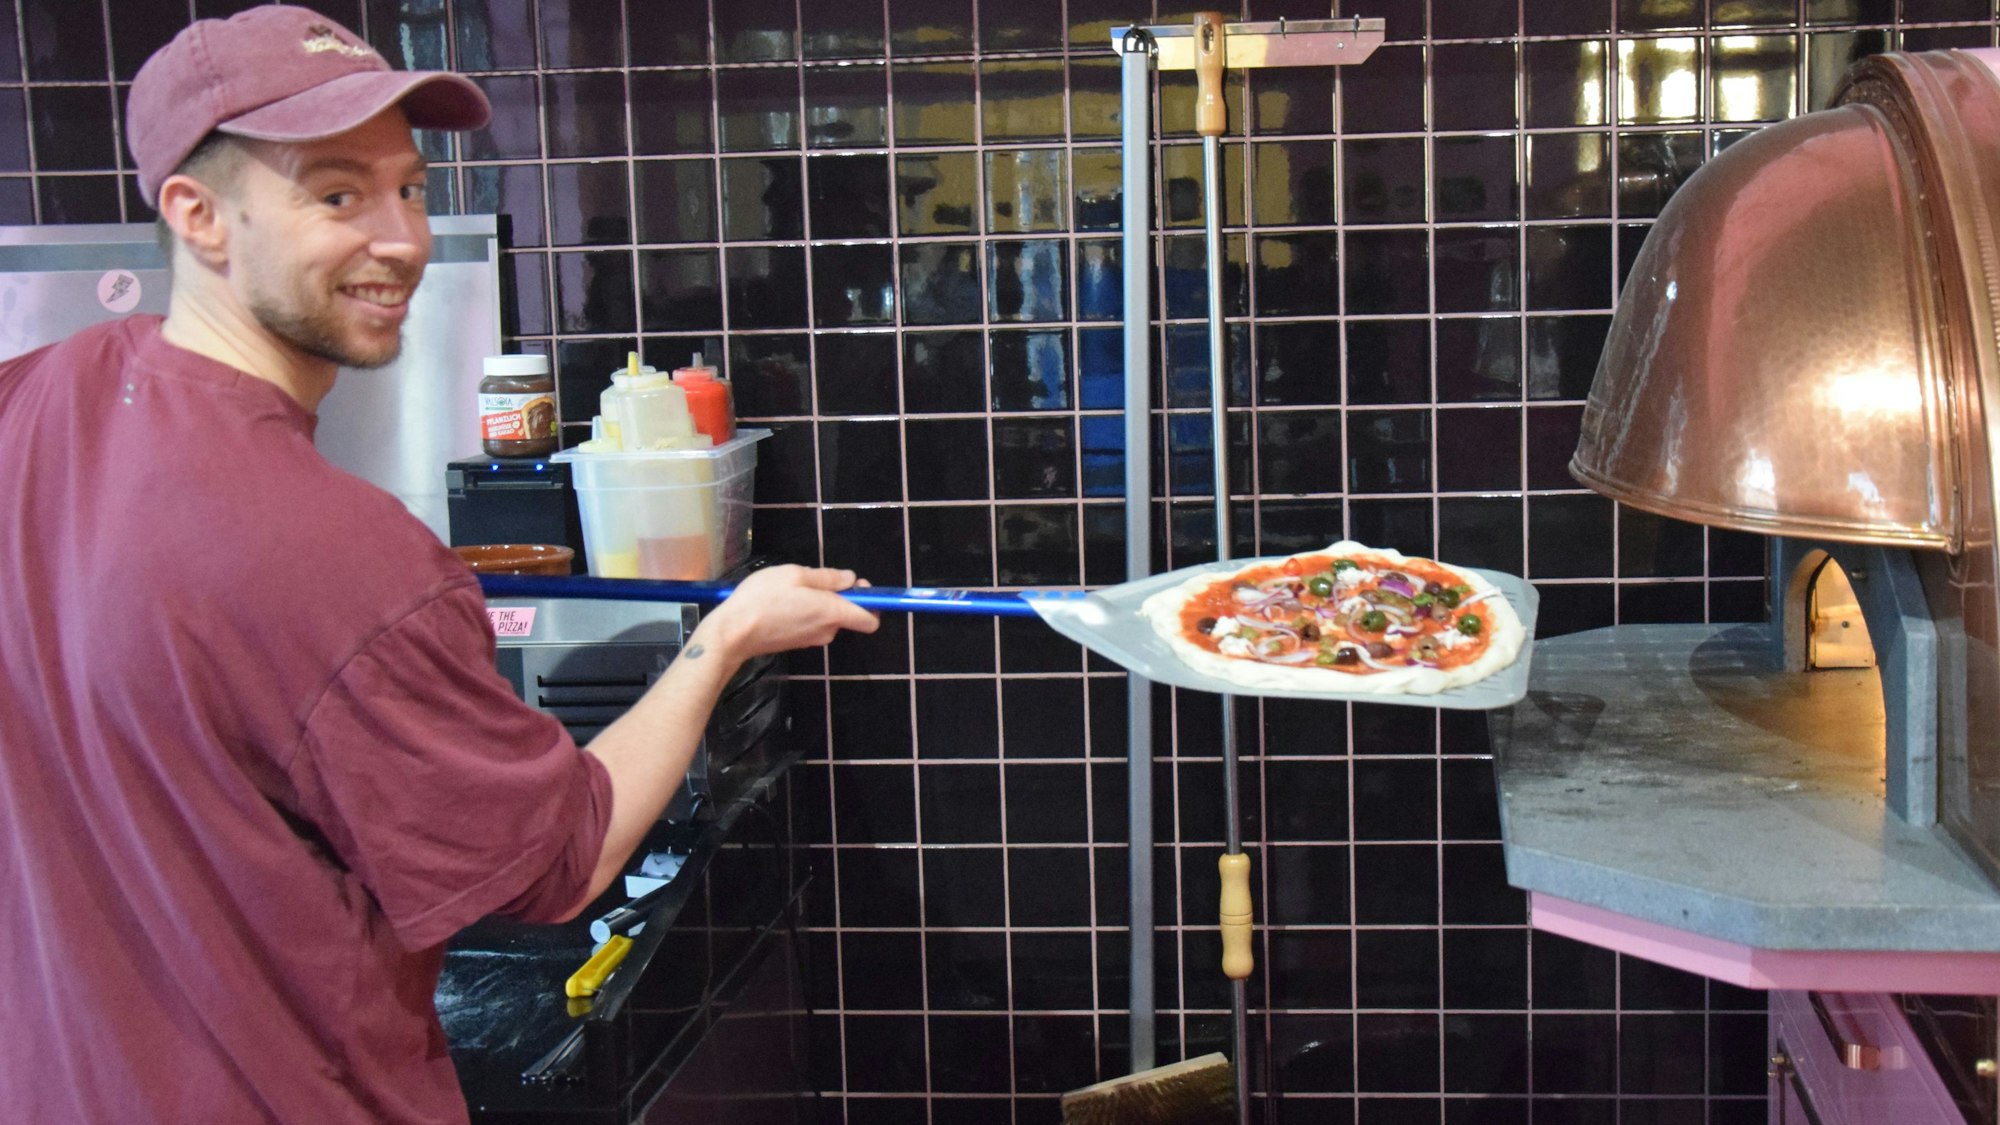 Zu sehen ist Mitchell Weiser, der eine Pizza in einen Ofen schiebt.